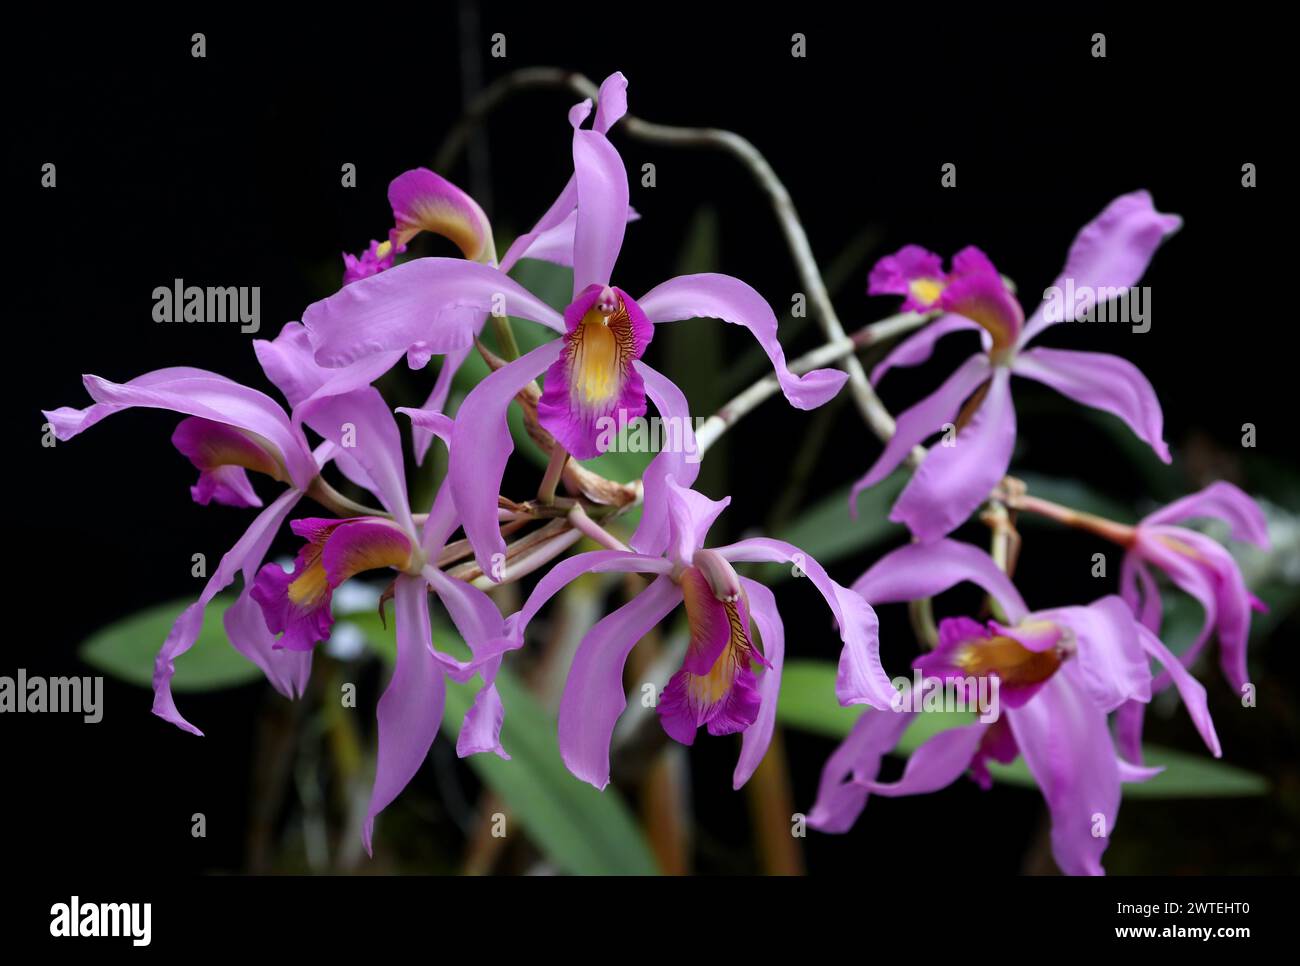 Laelia superbiens, Orchidaceae. Laelia superbiens è una specie di orchidea originaria del Messico, del Guatemala e dell'Honduras. Foto Stock